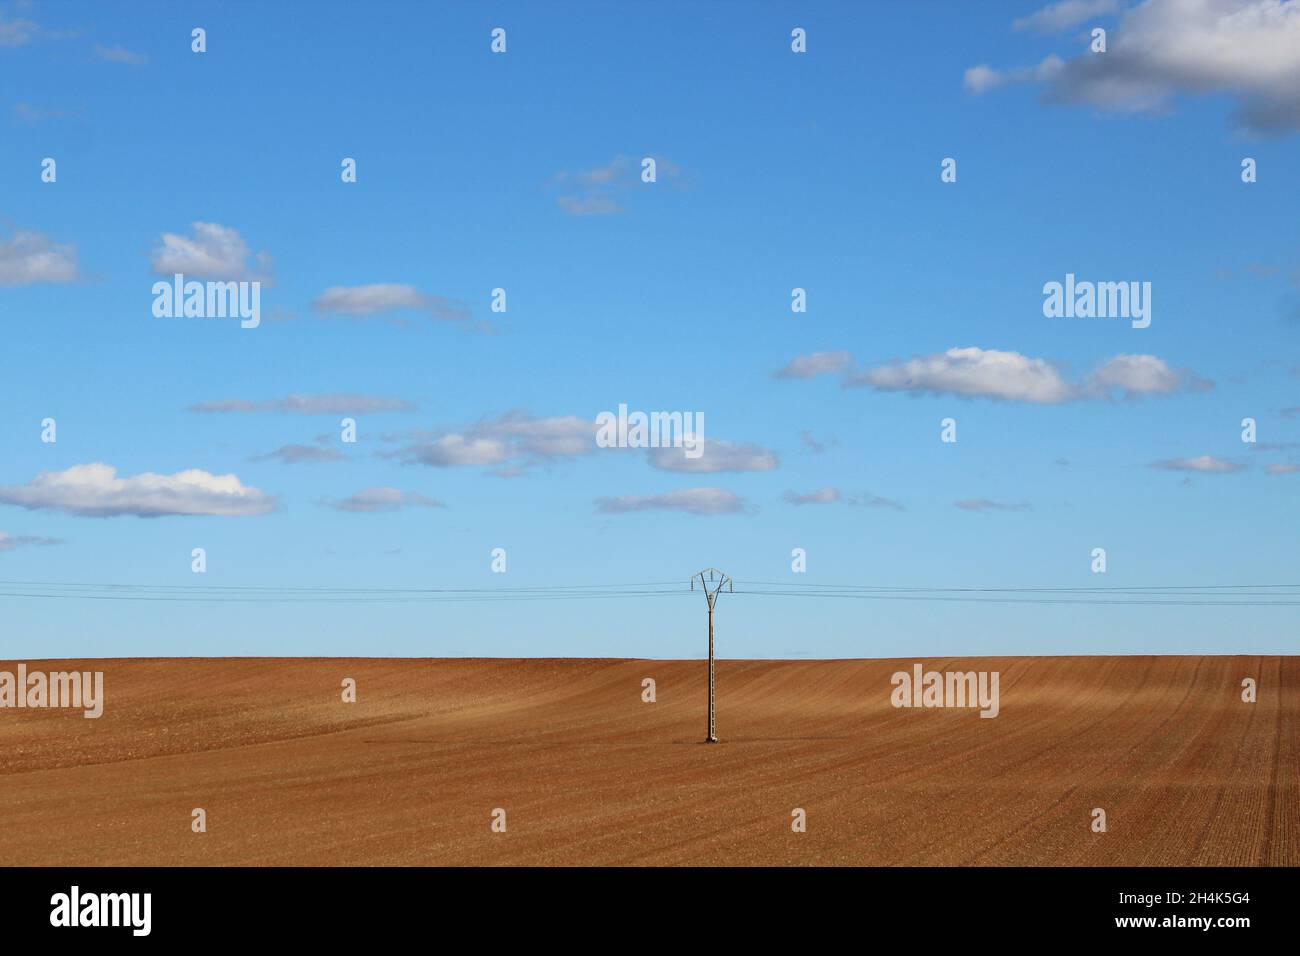 Landschaftsbild: ein braunes, abgemähtes Feld mit einem Strommast, blauer Himmel und Wolken in Spanien - kurz vor der Grenze zu Frankreich. Stock Photo